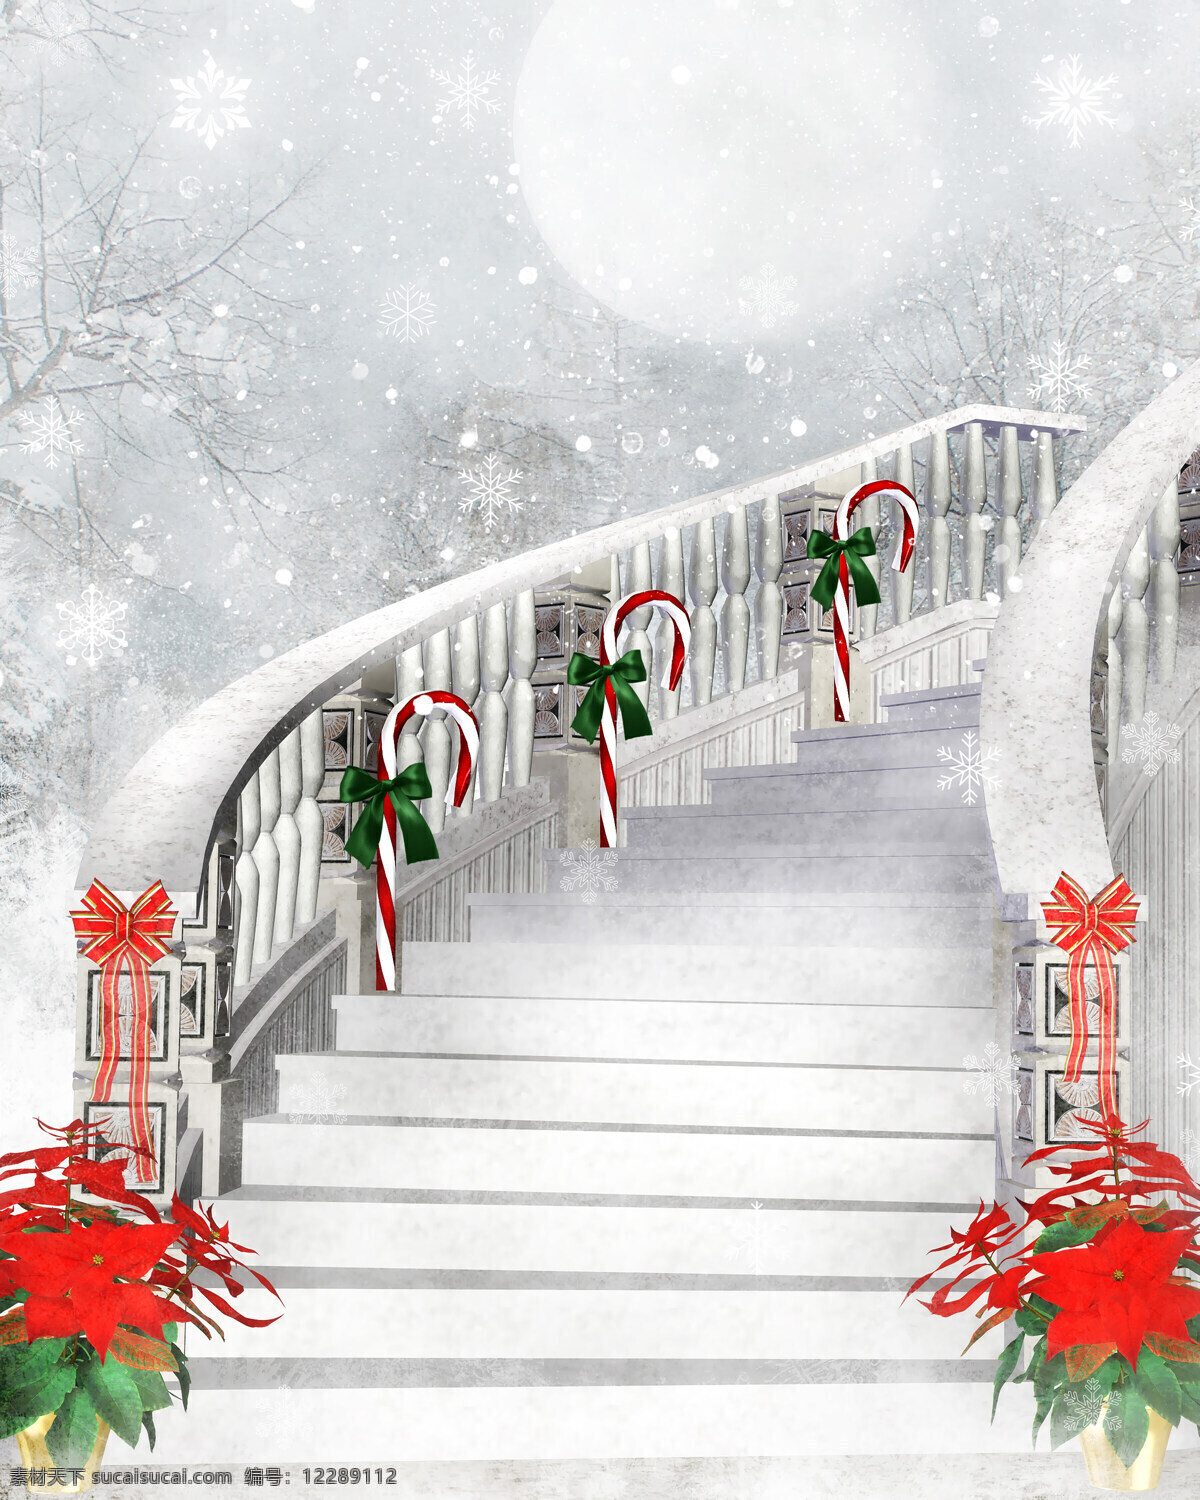 甜蜜 圣诞节 节日 圣诞节快乐 雪花 梦幻 唯美 蝴蝶结 甜蜜圣诞节 台阶 楼梯 建筑 圣诞节图片 生活百科